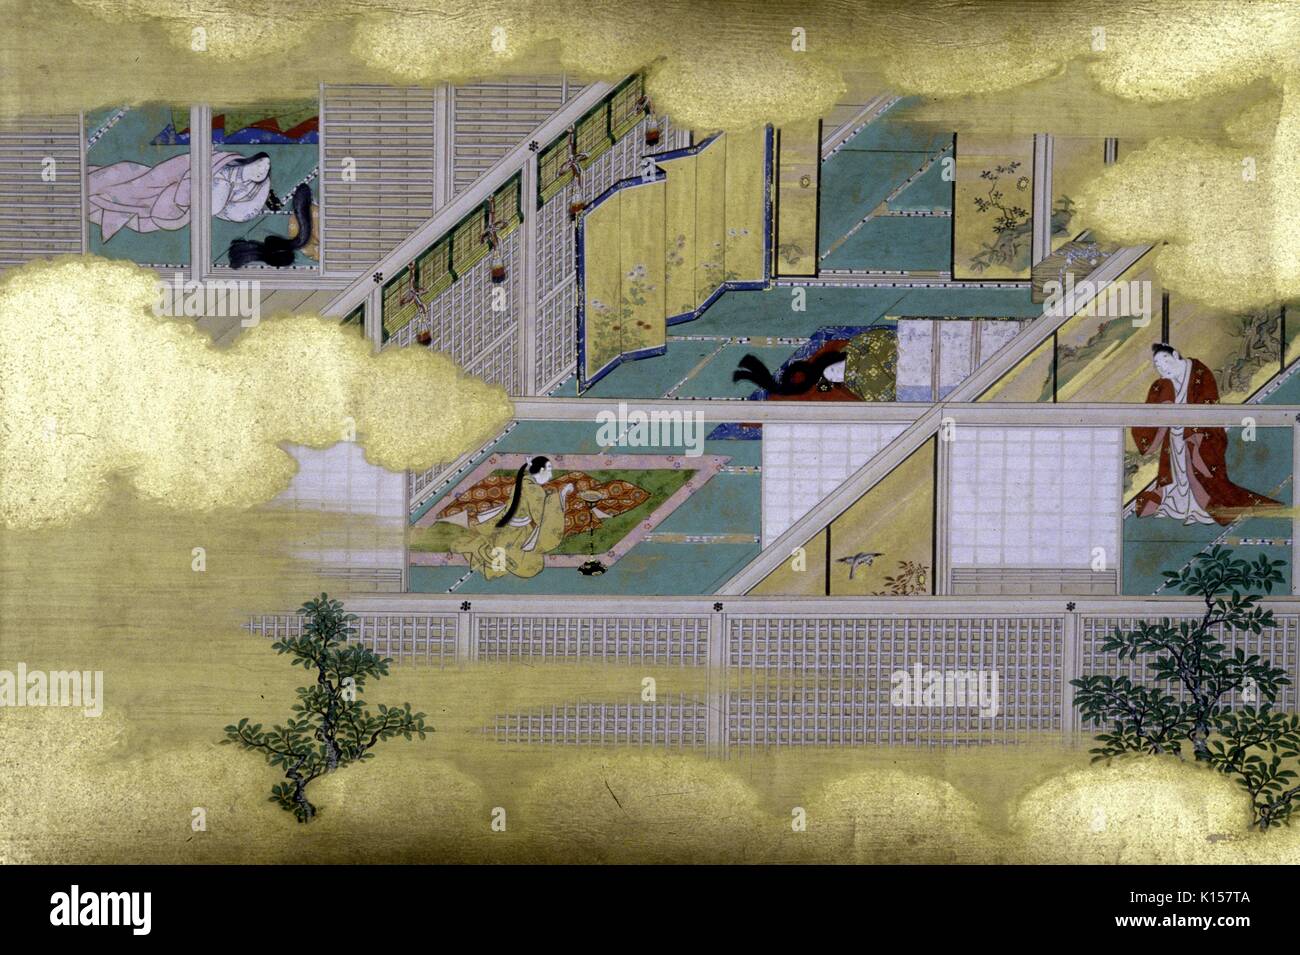 Un exemple de peinture japonais Yamato-e, dépeint la vie à l'intérieur d'une maison japonaise, les membres de la famille peut être vu dans différentes parties de la maison, les petits arbres peuvent être vus à l'extérieur, d'autres détails de la peinture sont obscurcis par des nuages flottants, 1660. À partir de la Bibliothèque publique de New York. Banque D'Images